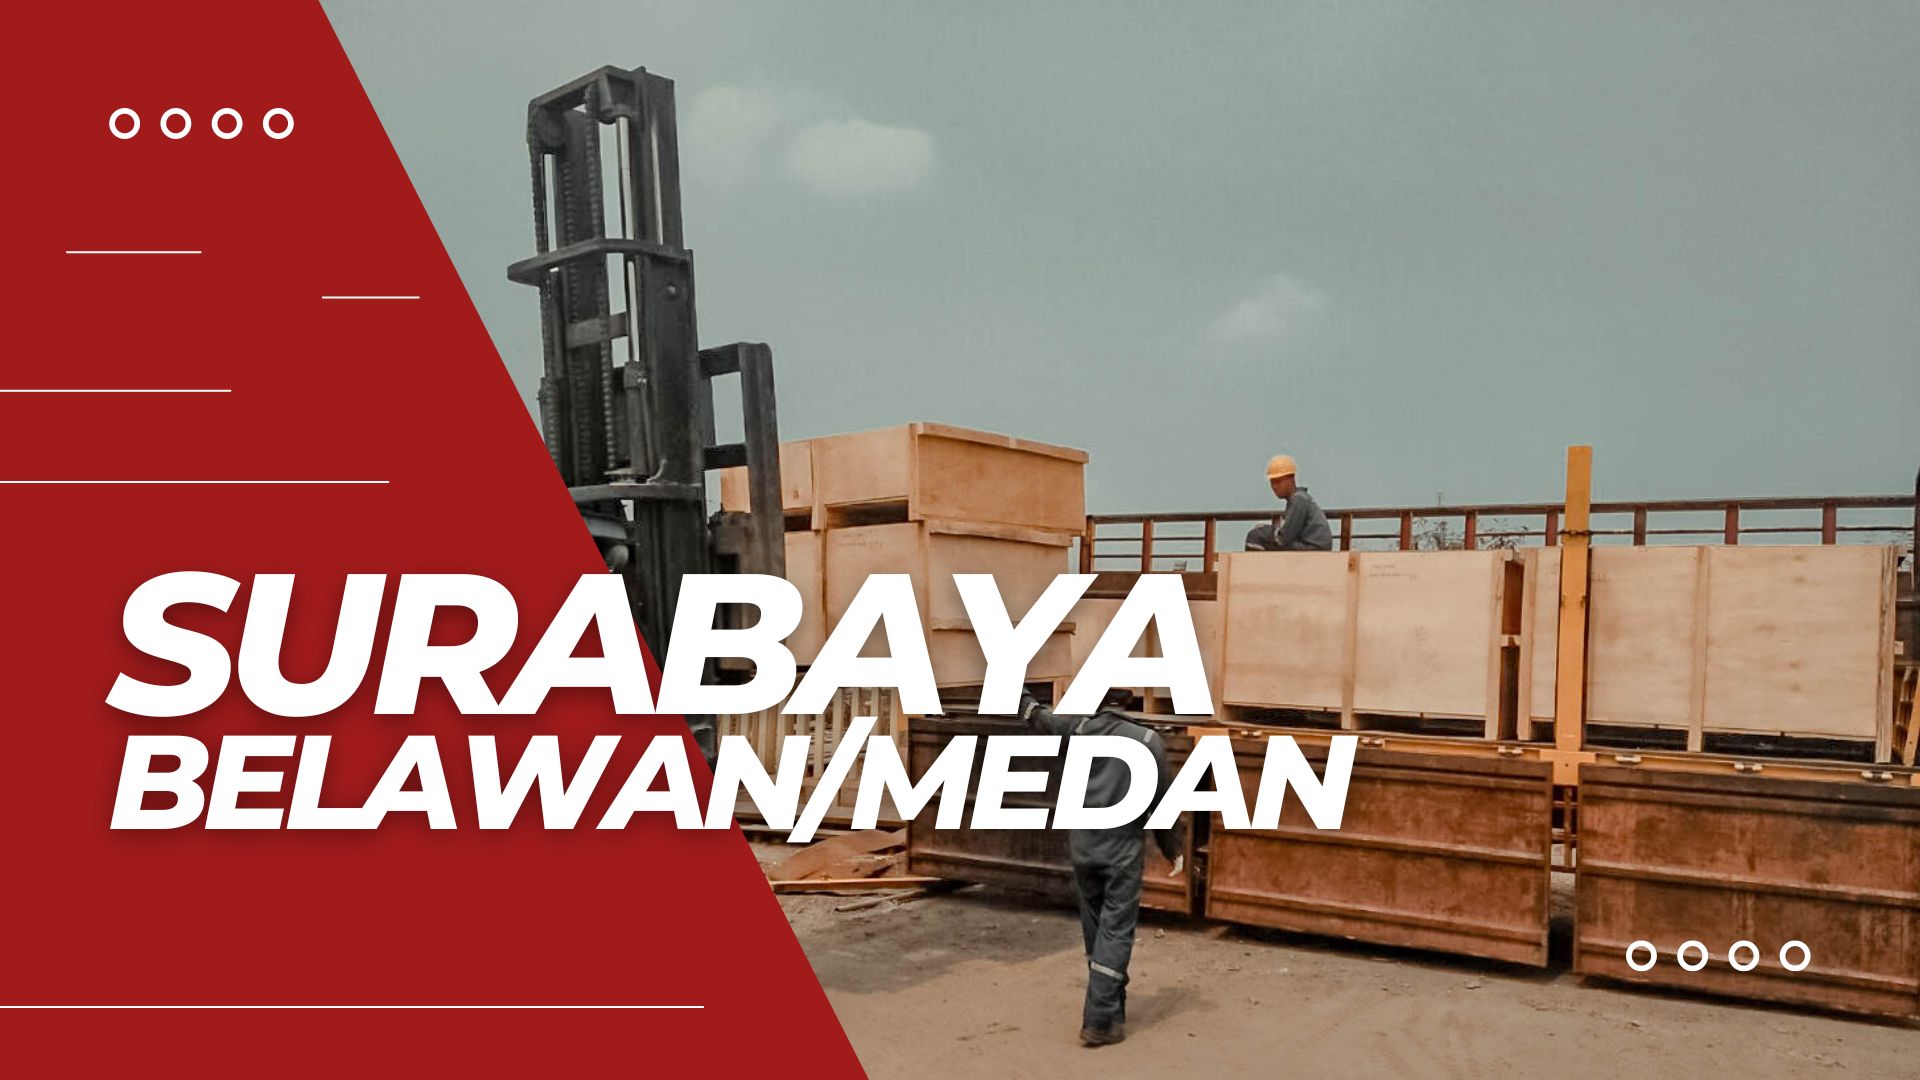 Tarif Pengiriman Container Surabaya Belawan/Medan